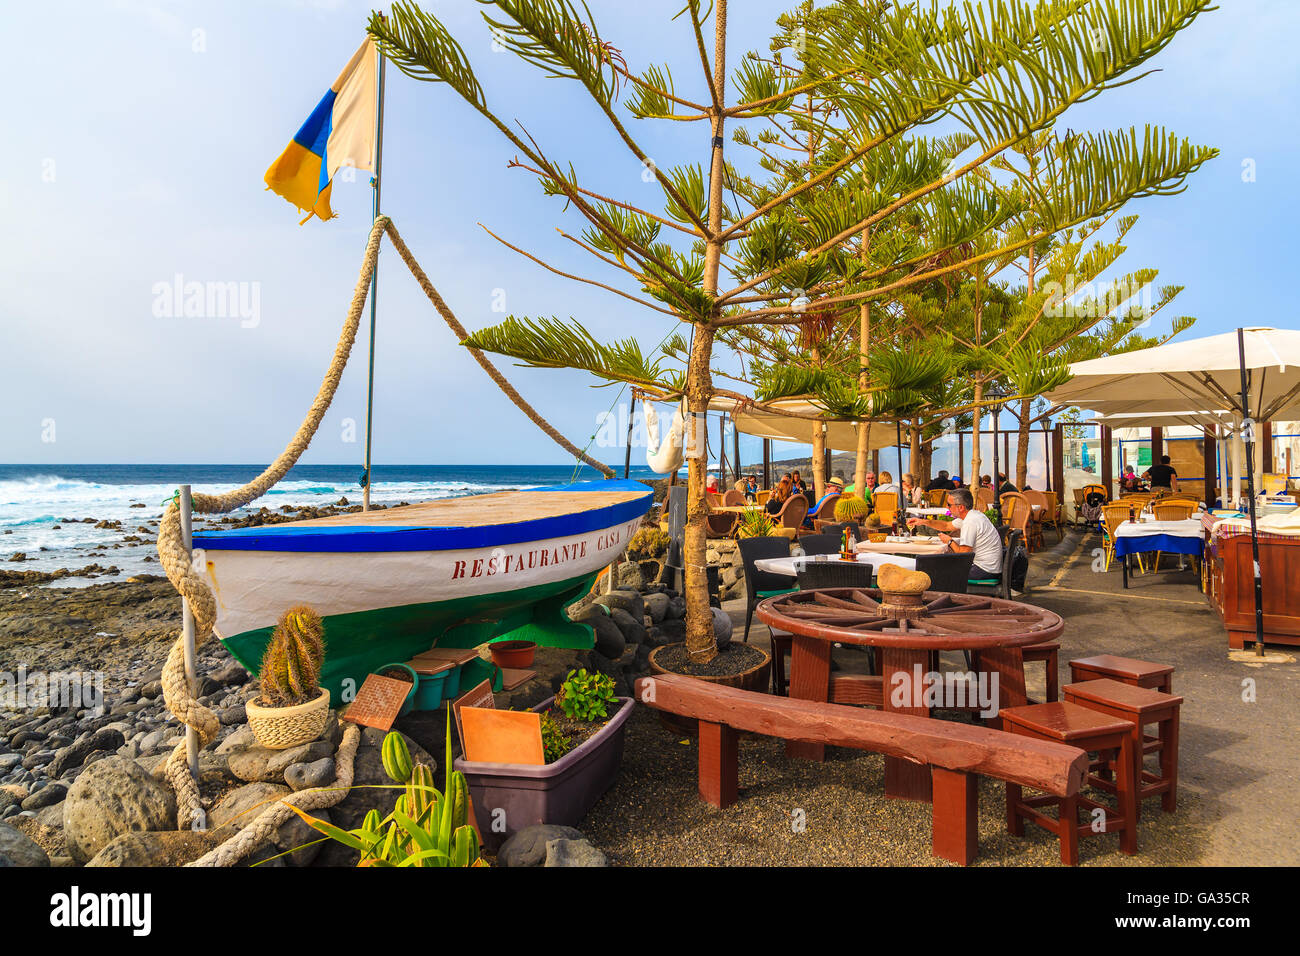 EL GOLFO, Lanzarote Island - Jan 12, 2015: barca da pesca in tipico ristorante sulla costa dell'isola di Lanzarote in El Golfo villaggio di pescatori. Le isole Canarie sono meta di vacanze. Foto Stock